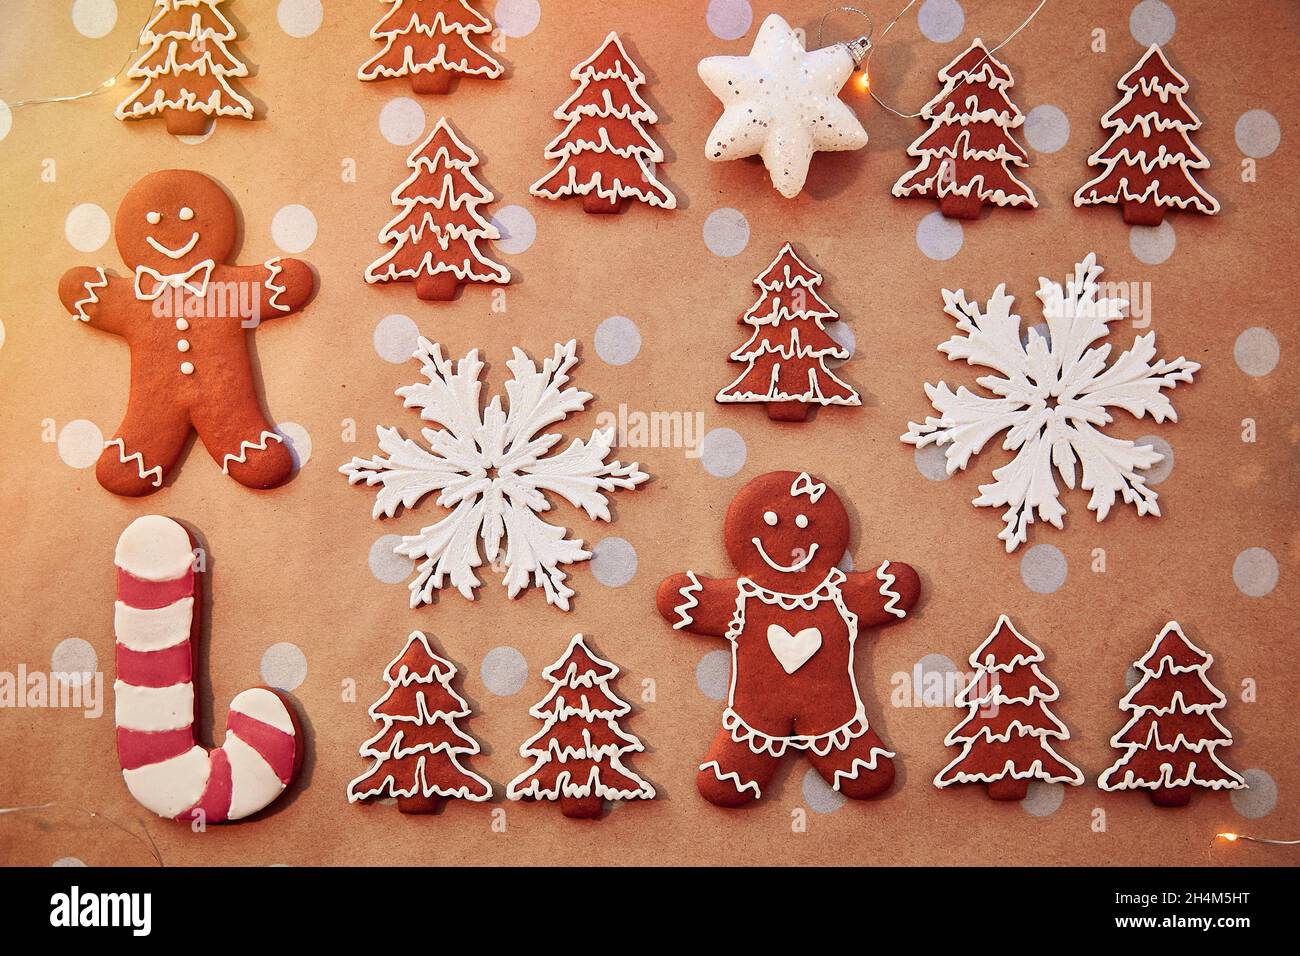 Màu sắc và hình dáng của bánh quy quy đầu gừng làm cho chúng trở thành biểu tượng của Giáng Sinh. Hãy xem hình ảnh này để tìm được niềm vui và bình yên nhân dịp lễ hội đang đến gần!